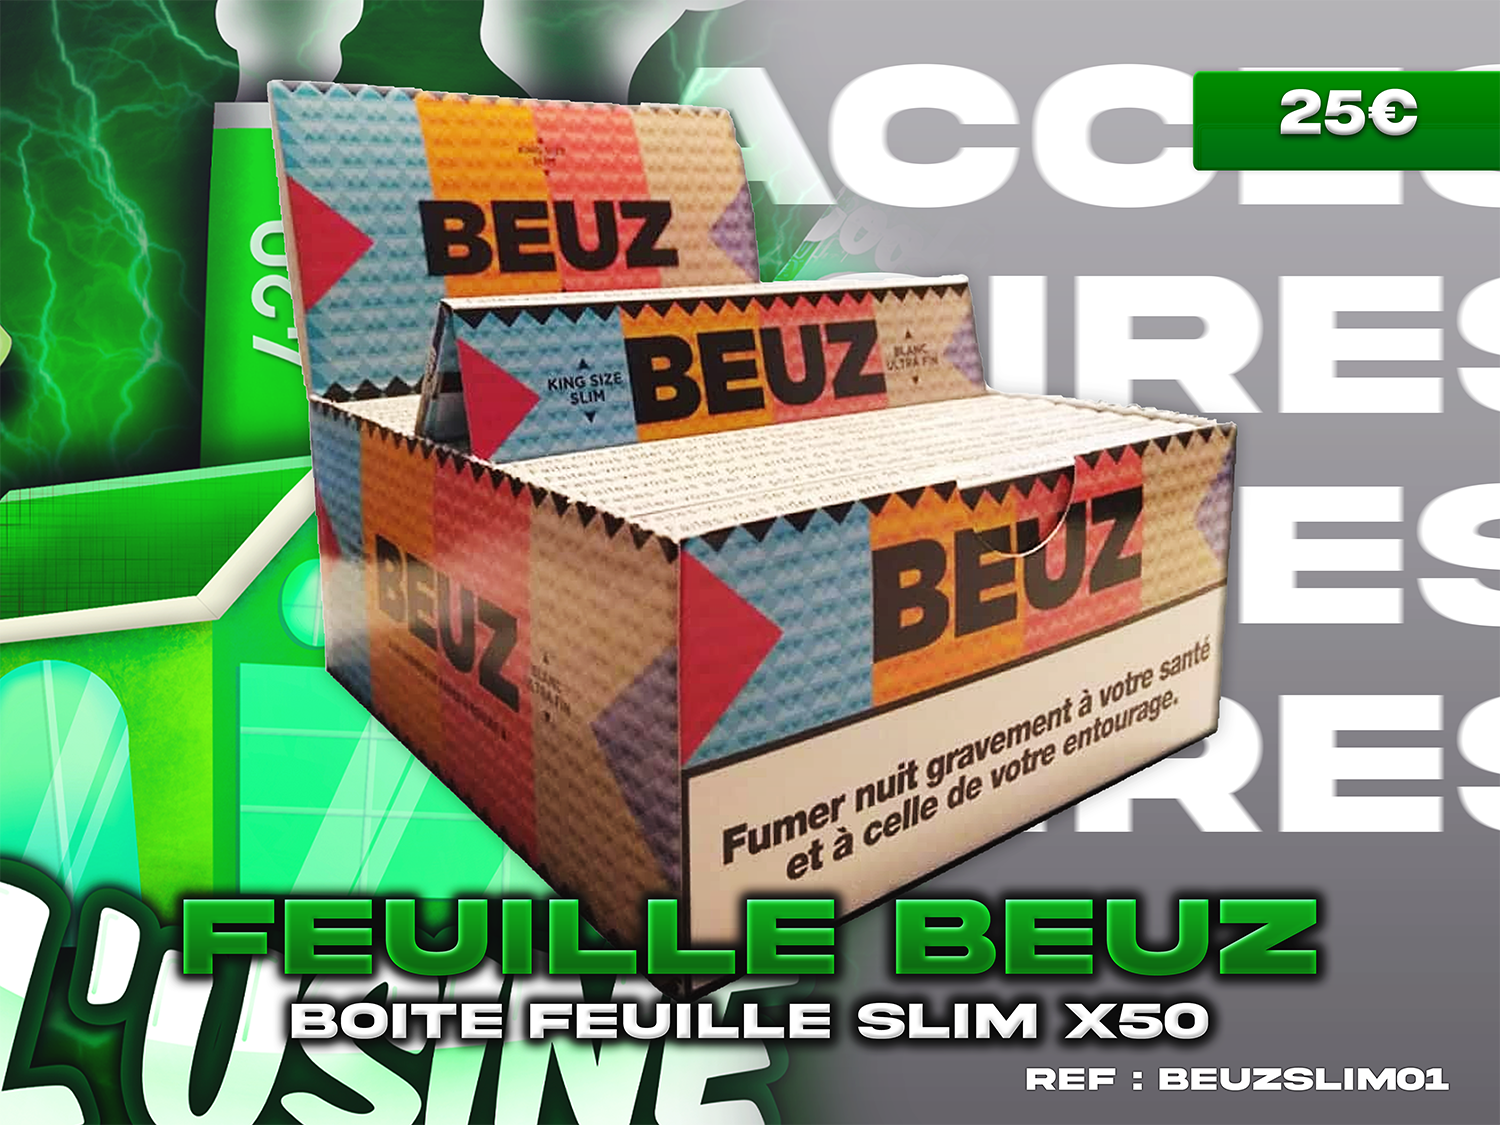 Boite feuille slim Beuz x50 – L'usine 420